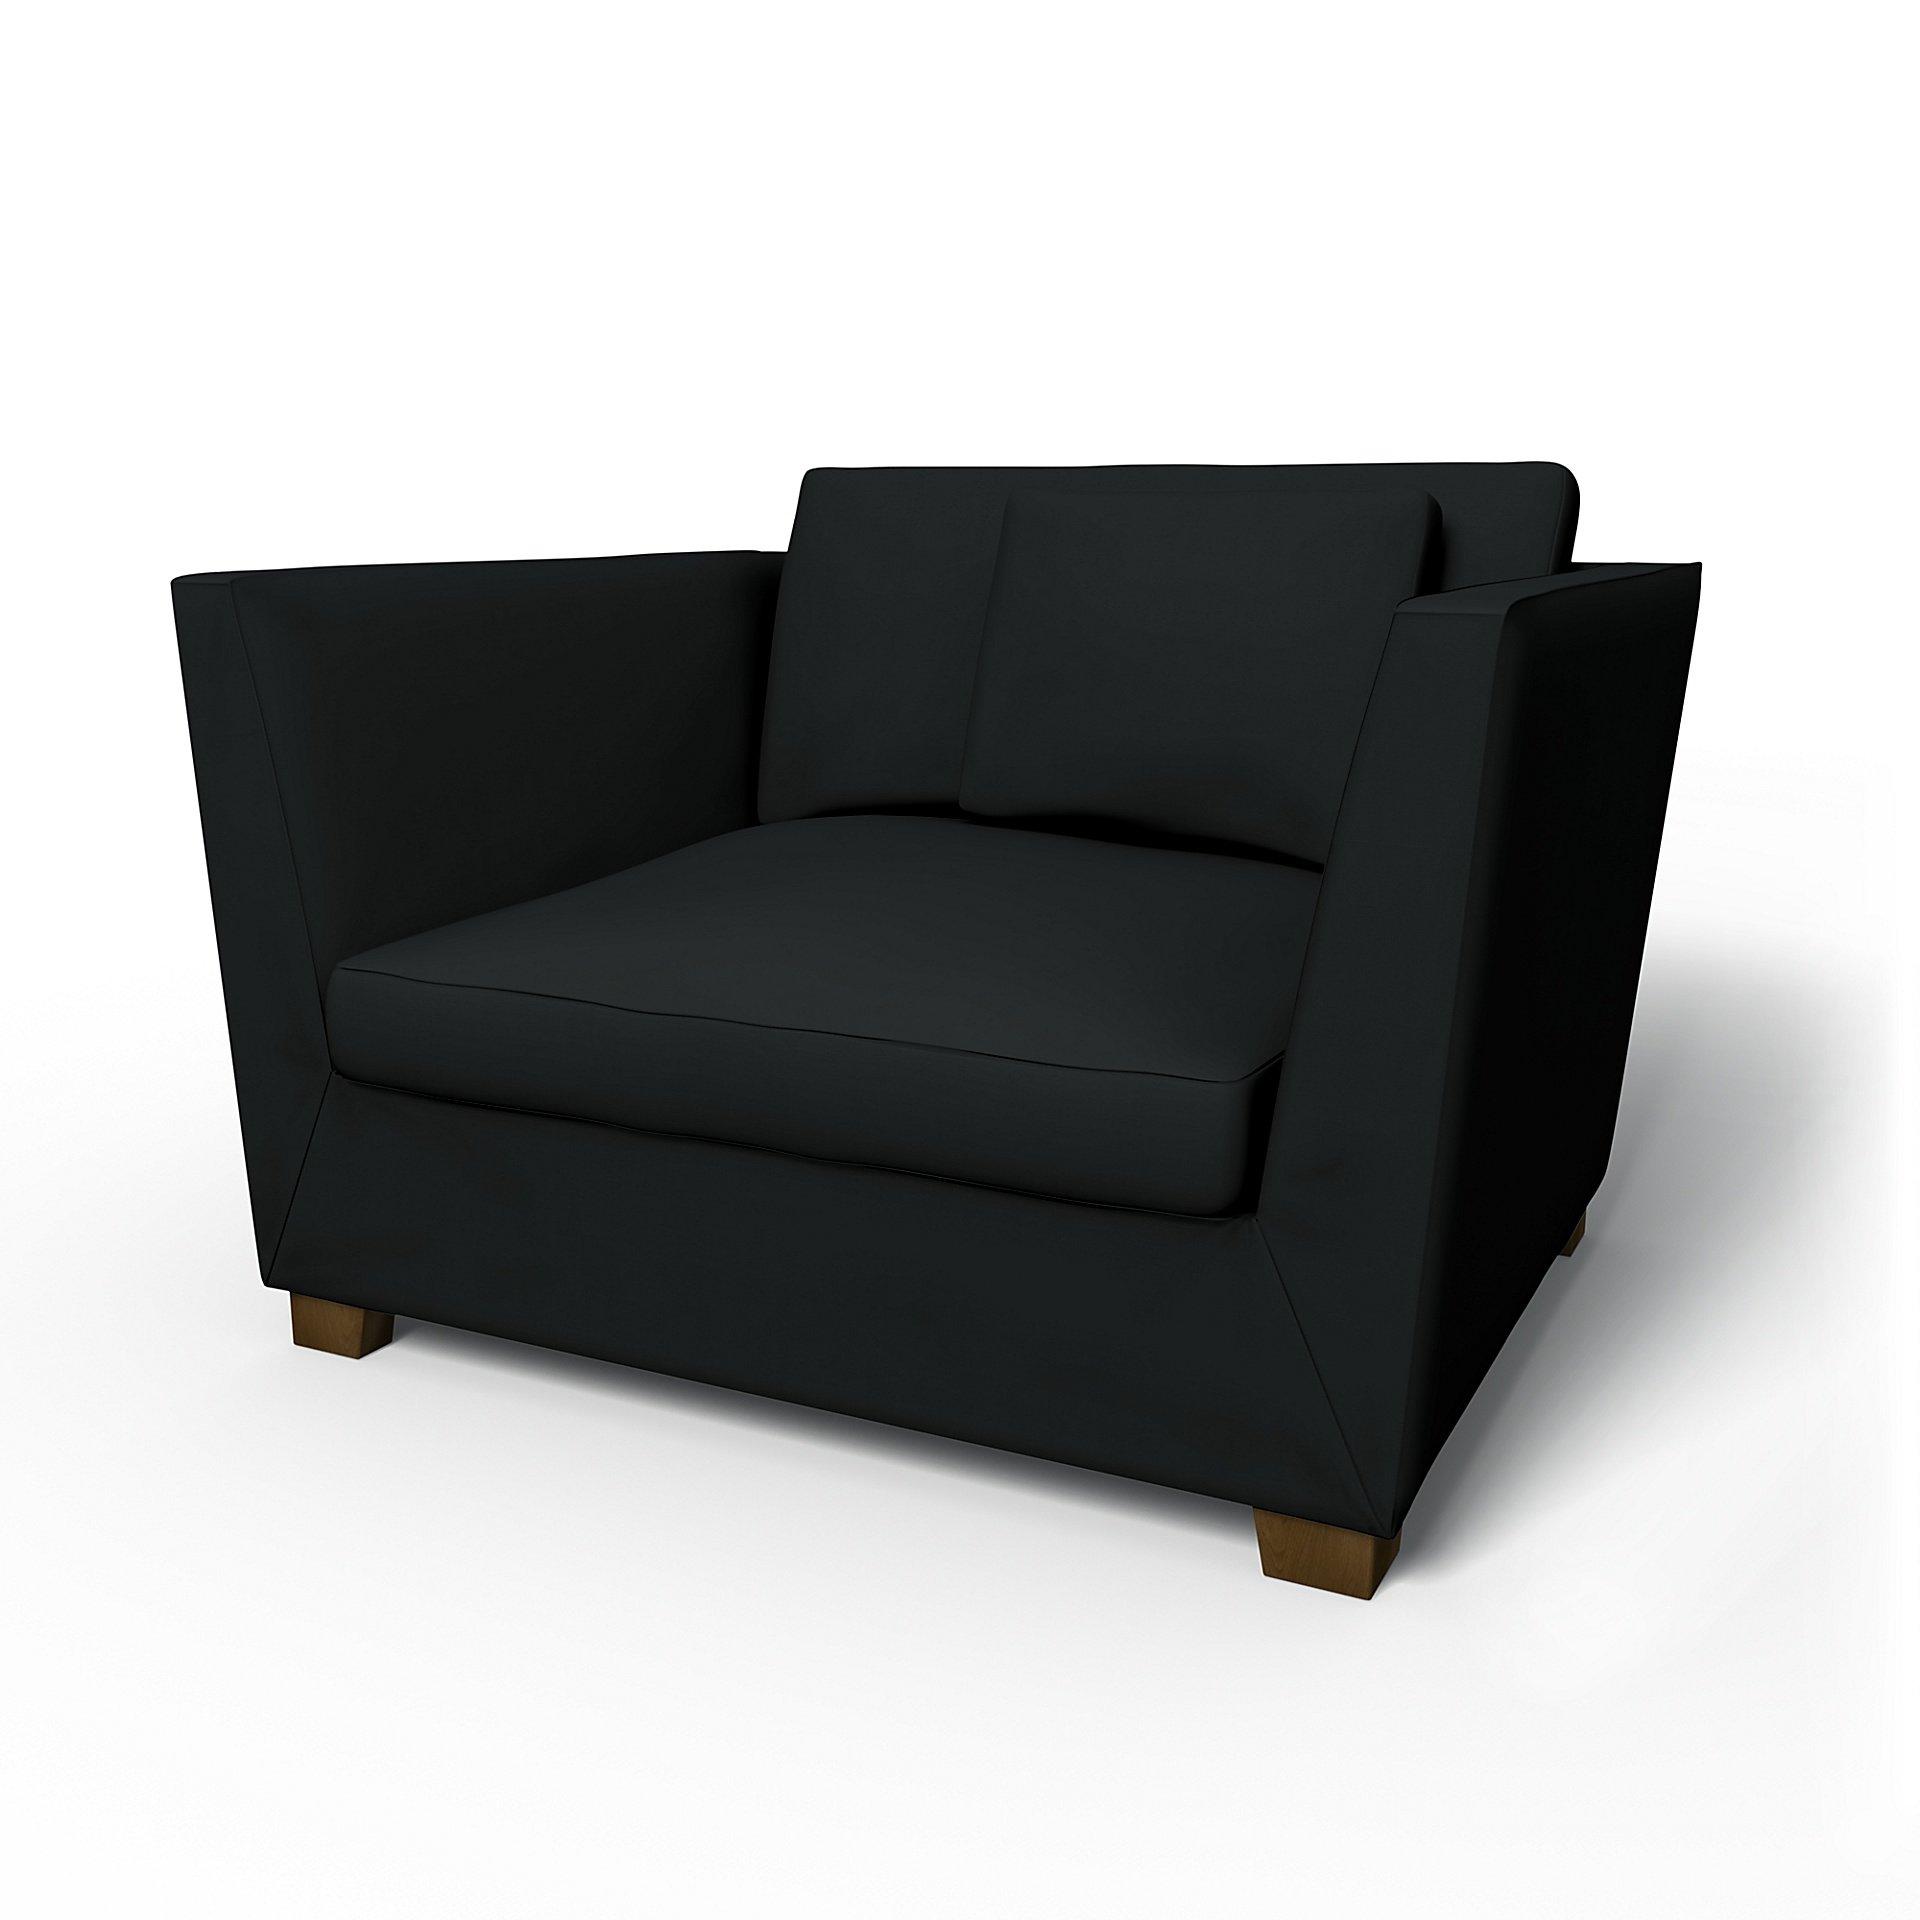 IKEA - Stockholm Armchair Cover, Jet Black, Cotton - Bemz